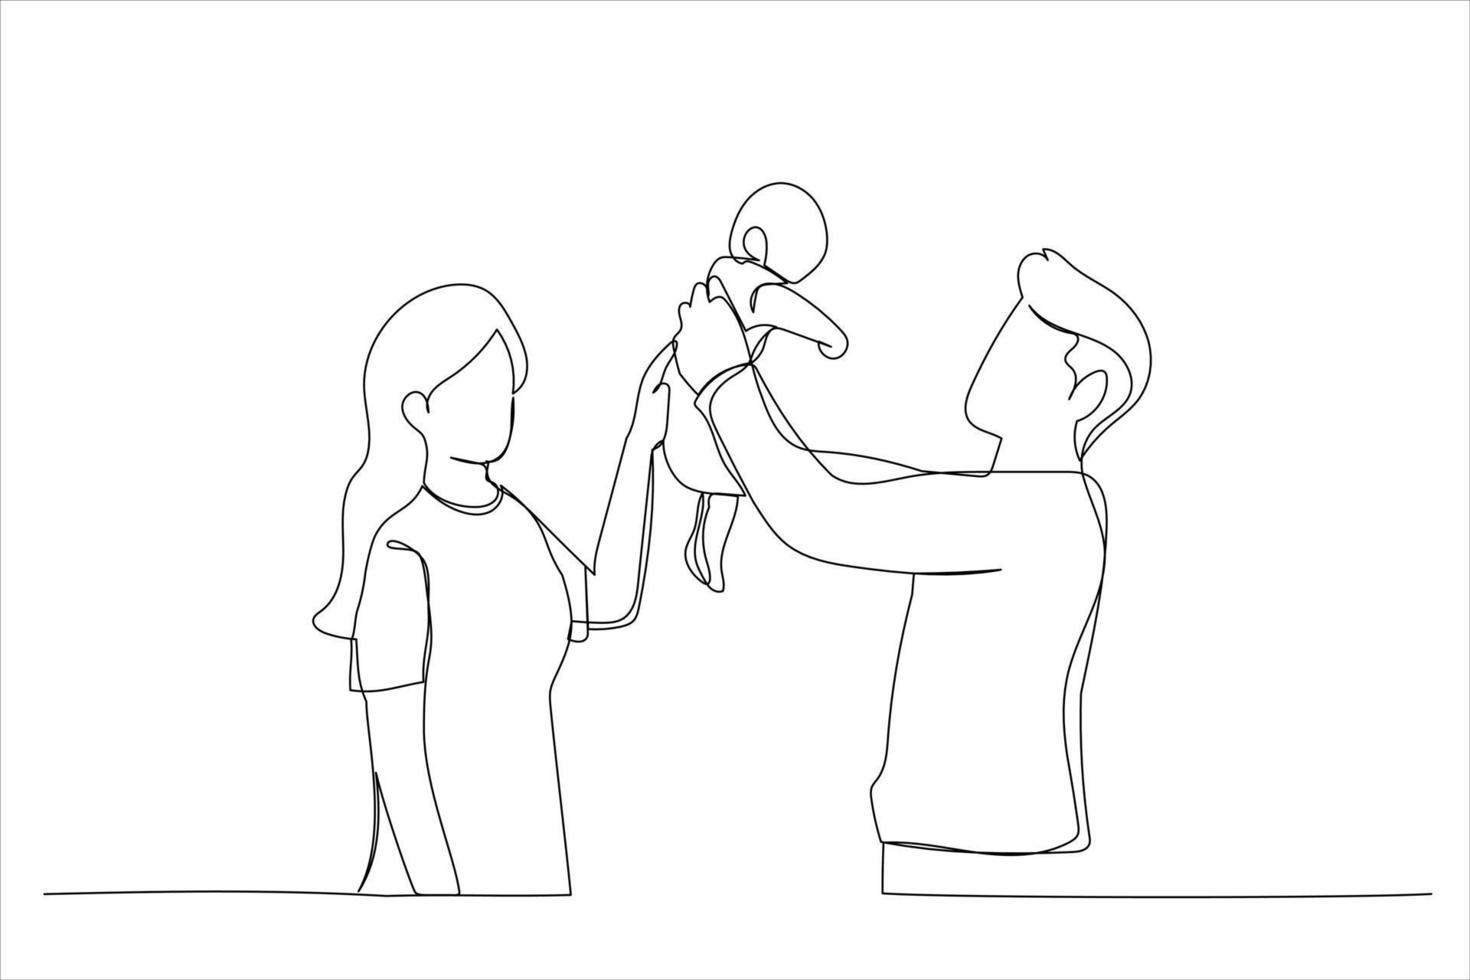 desenho do pai levantando o bebê recém-nascido no ar e beijando-o, a mãe está assistindo ao lado. estilo de arte de linha única vetor